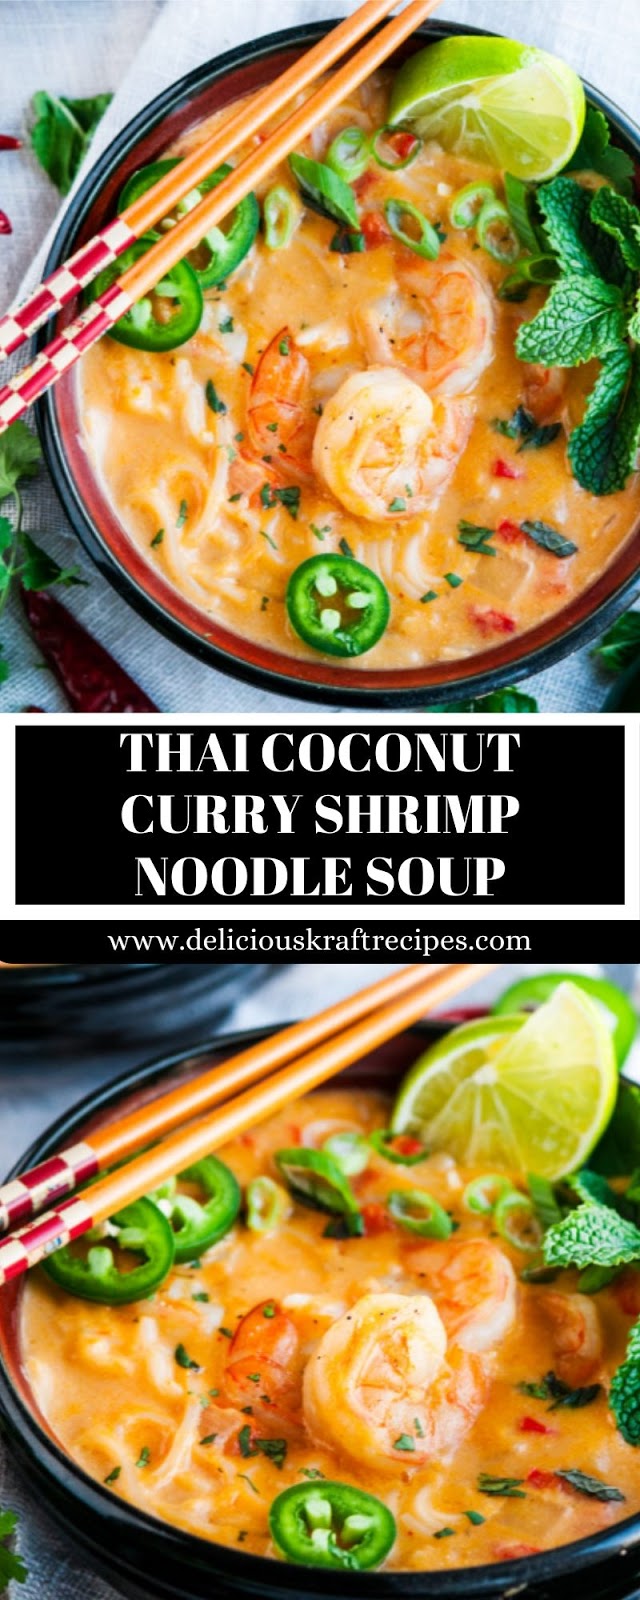 THAI COCONUT CURRY SHRIMP NOODLE SOUP